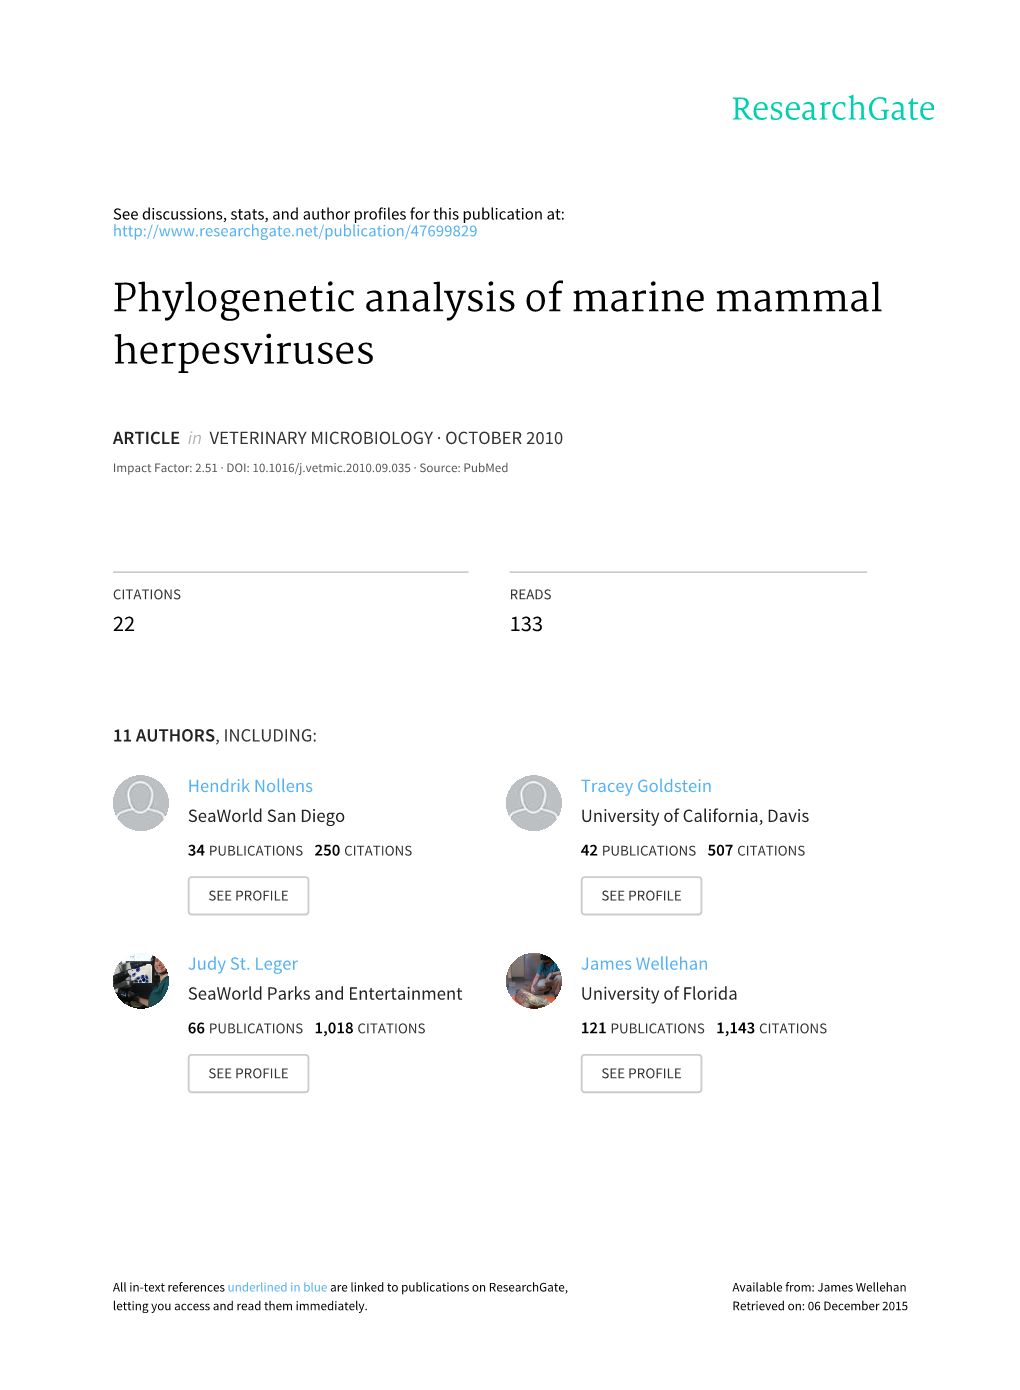 Phylogenetic Analysis of Marine Mammal Herpesviruses